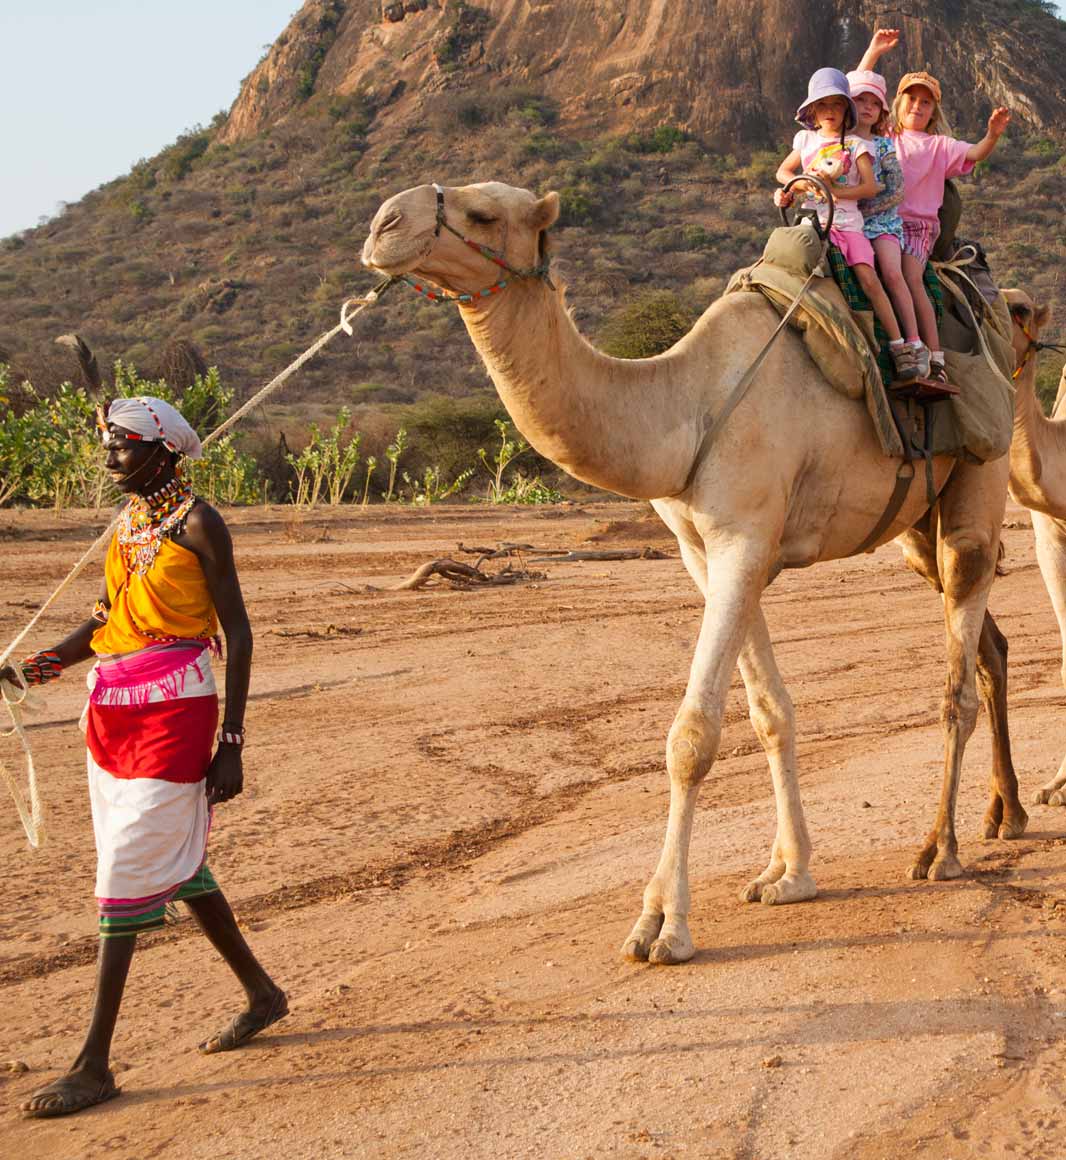 Family camel safari in Kenya